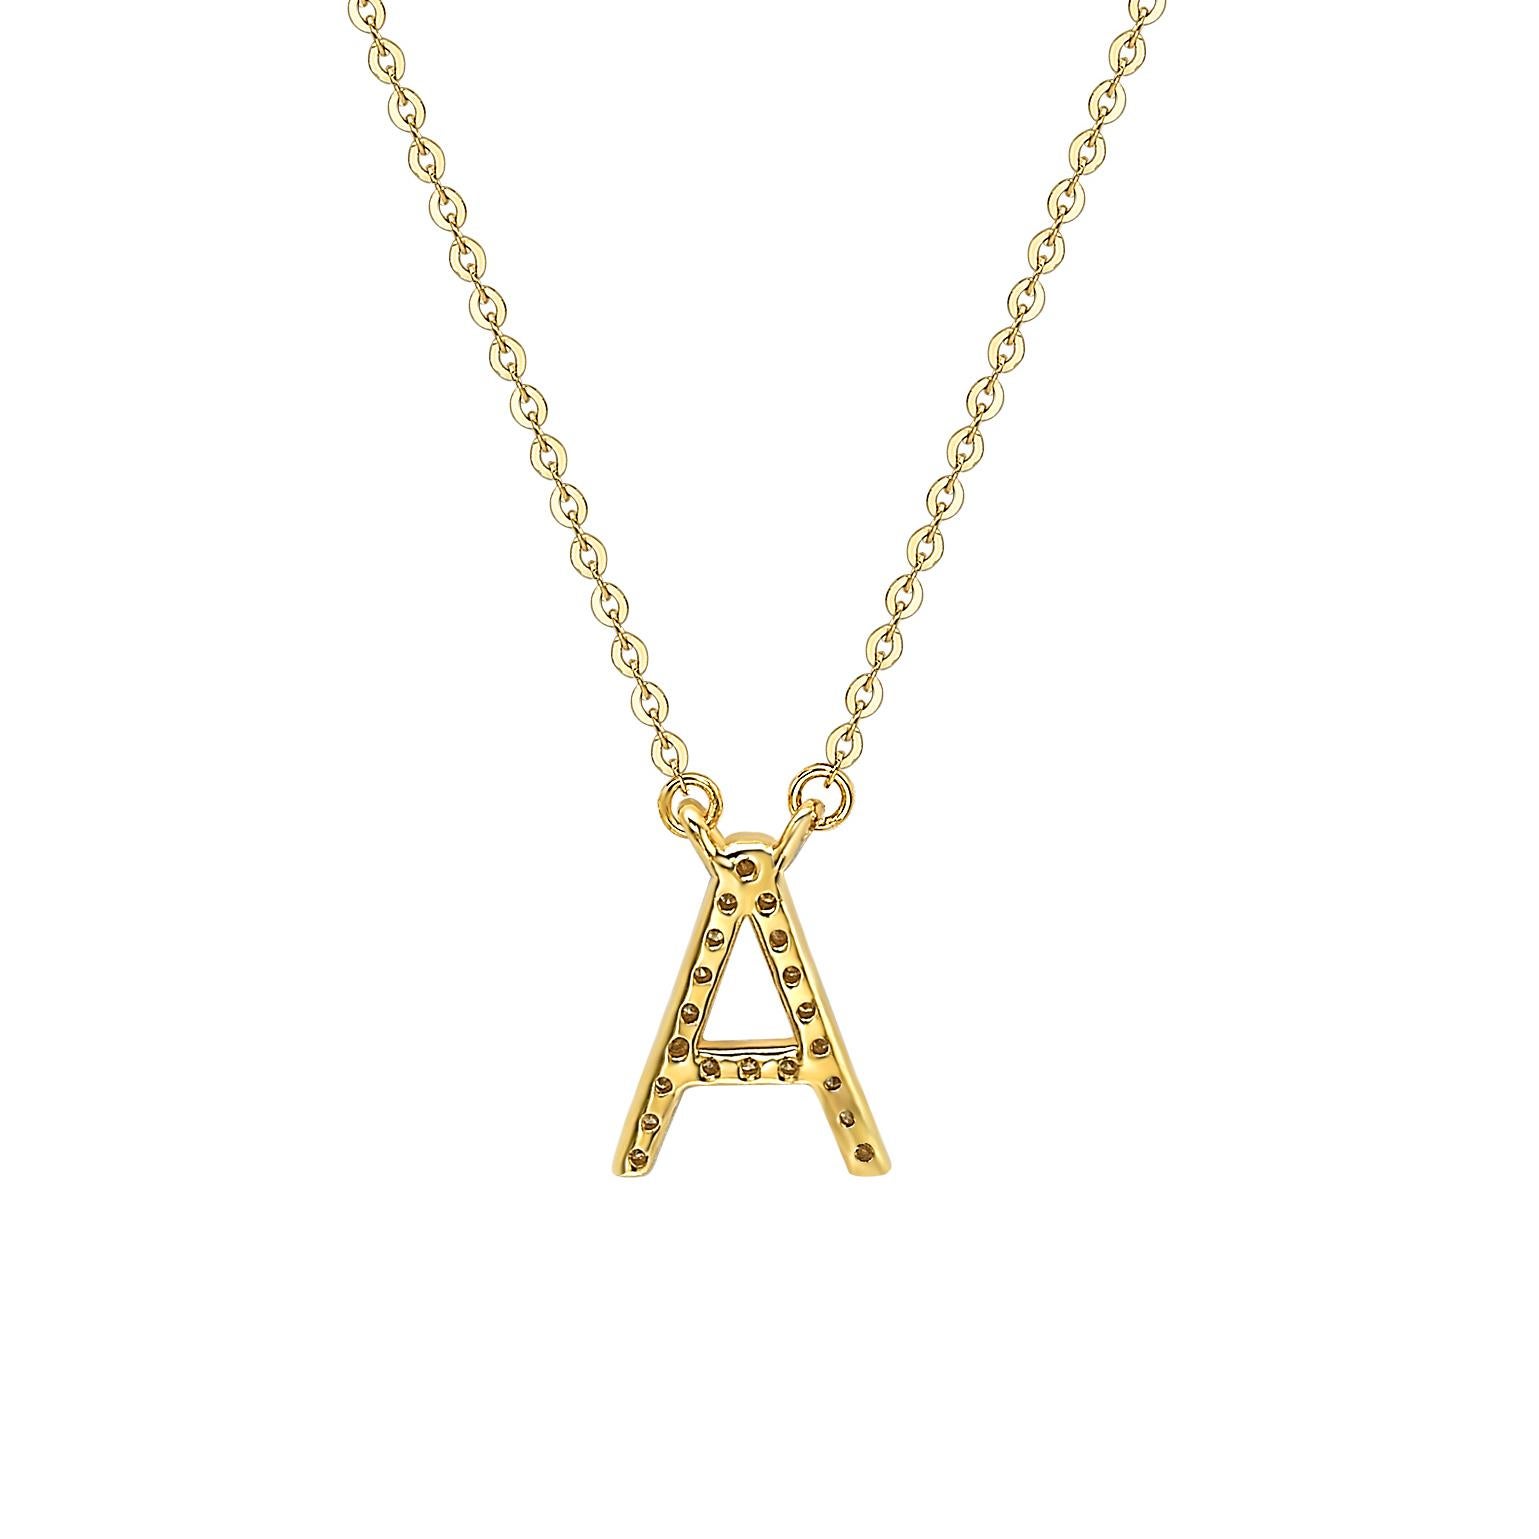 Diese atemberaubende, personalisierte Suzy Levian Buchstabenkette besteht aus natürlichen Diamanten, die von Hand in 14-karätiges Gelbgold gefasst wurden. Es ist das perfekte individuelle Geschenk, um jemandem mitzuteilen, dass man an ihn oder sie